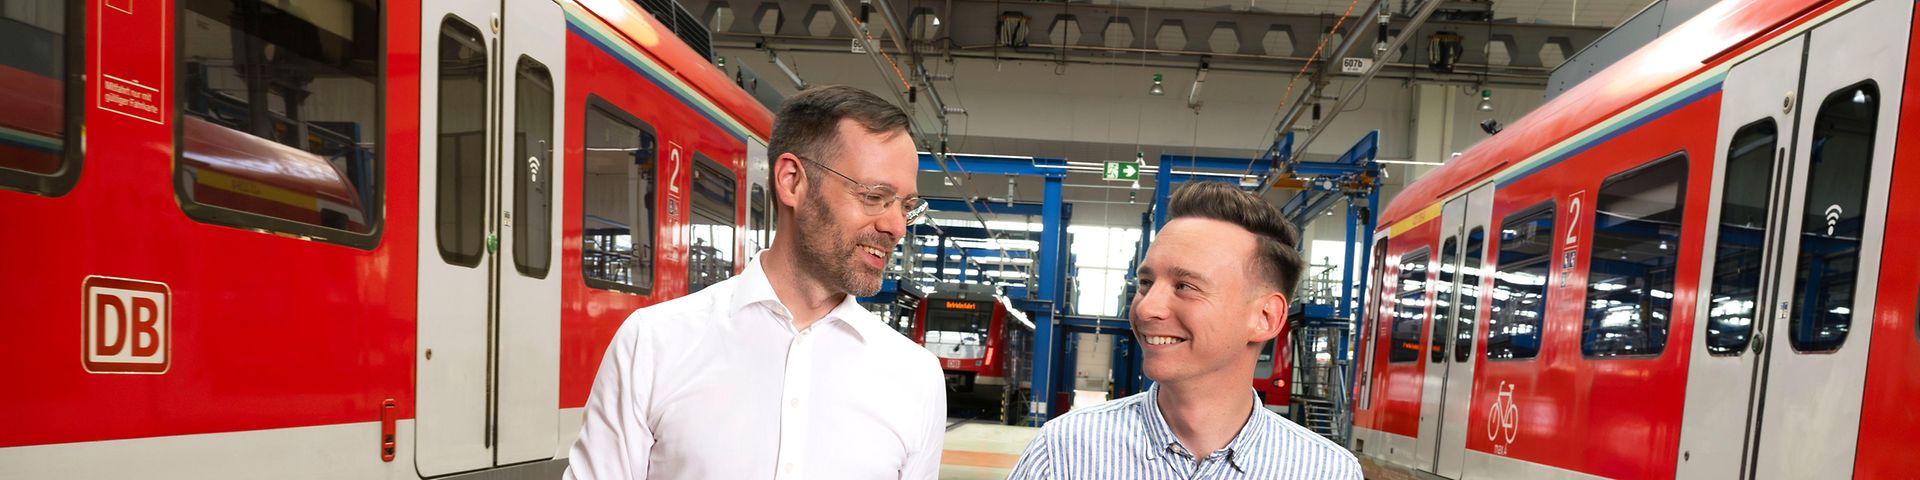 Zwei Consultant Manager durchqueren eine Werkhalle für S-Bahnen